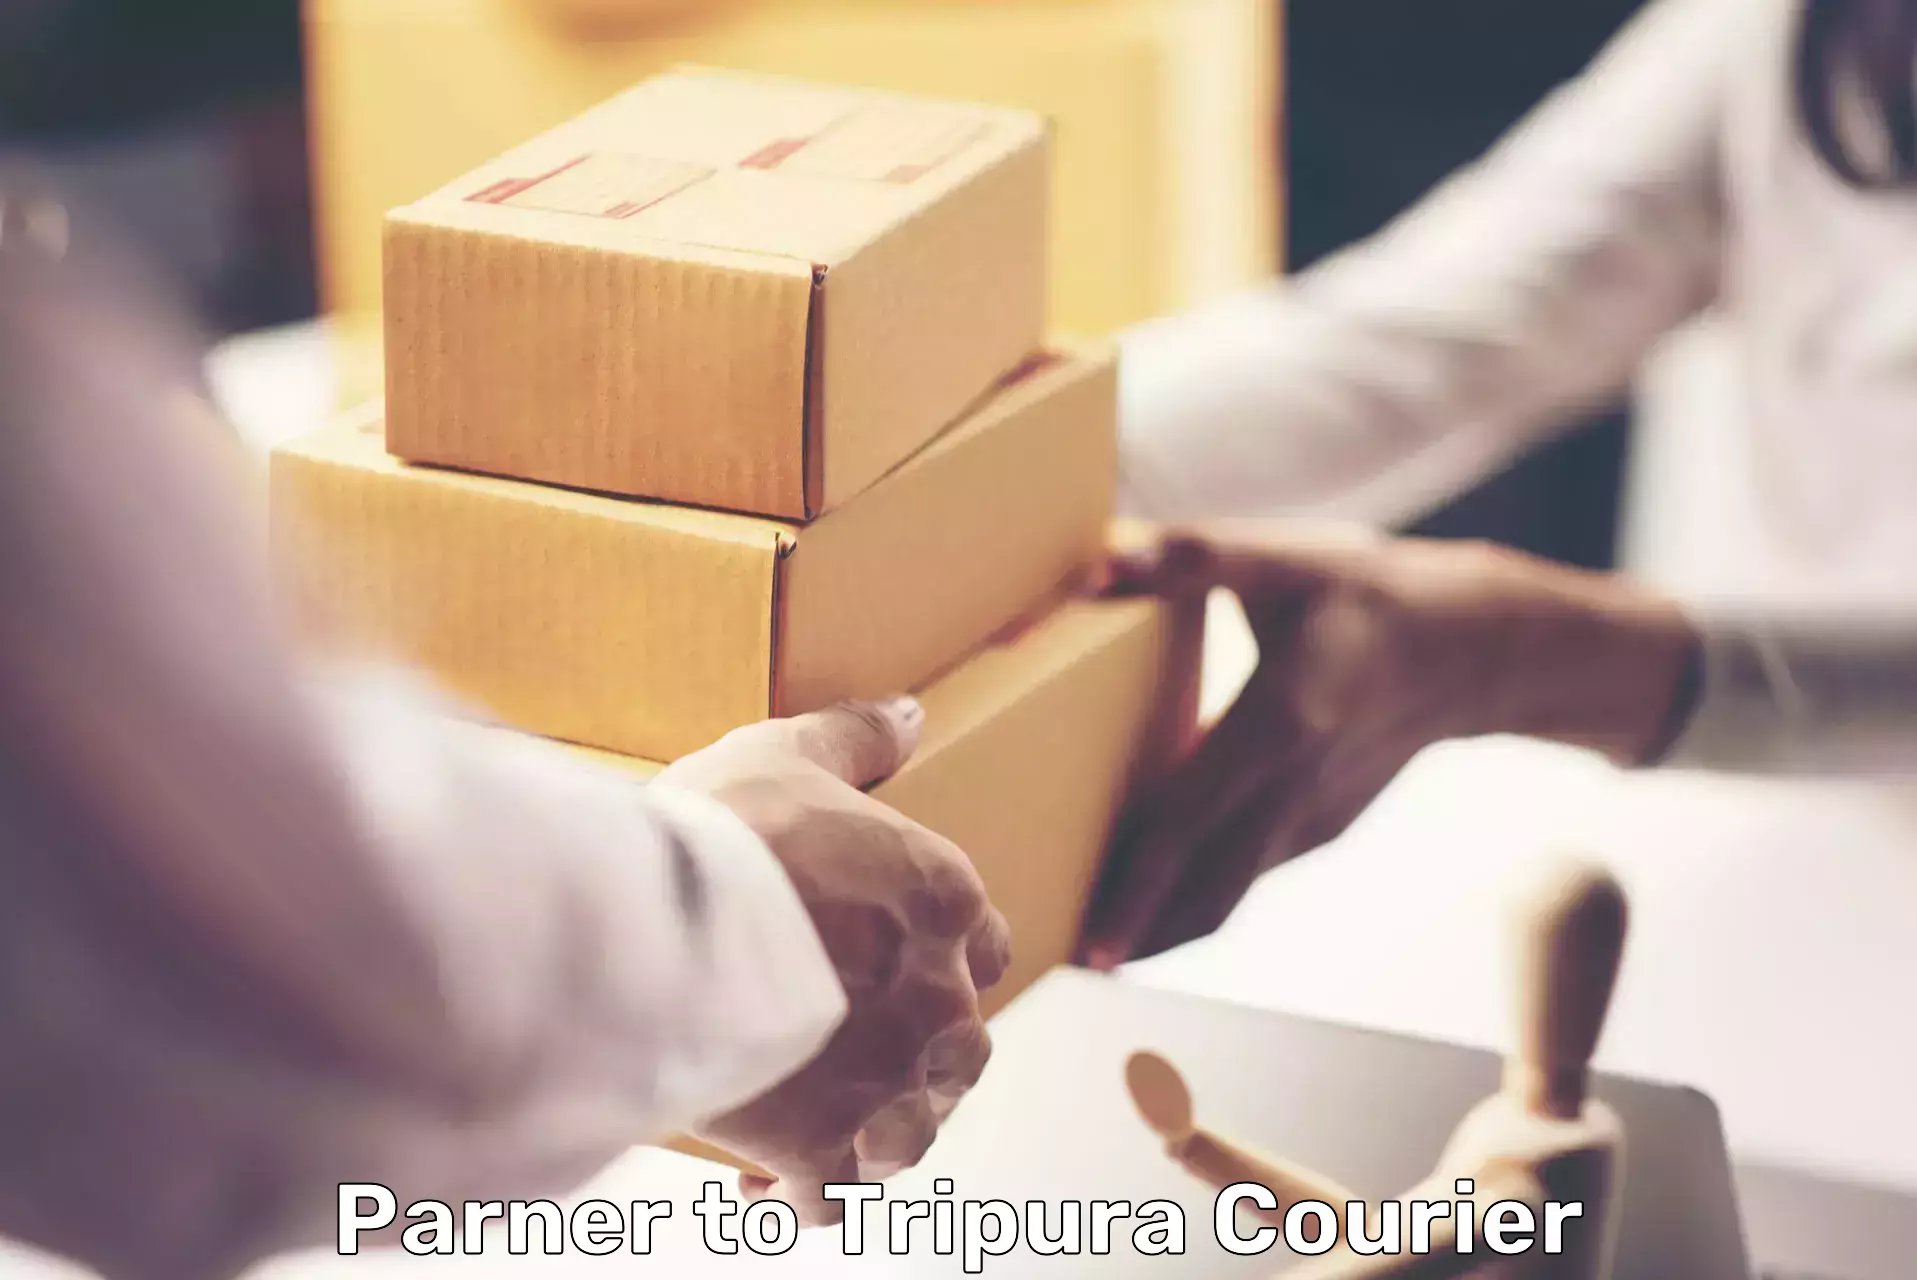 Courier service comparison Parner to Tripura